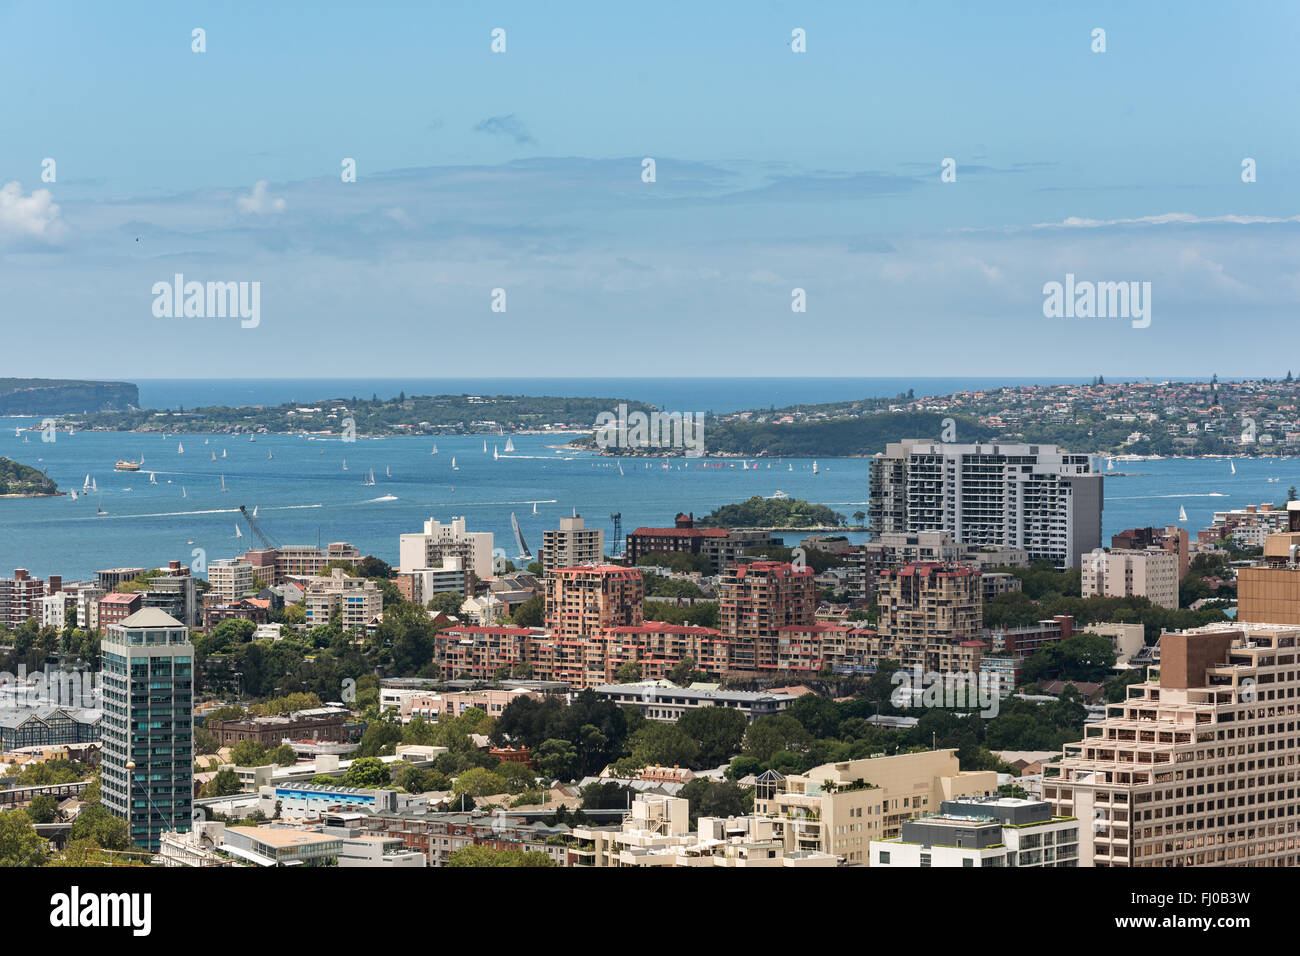 Le port de Sydney avec les navires et les yachts et les bâtiments adjacents de hauteur Banque D'Images